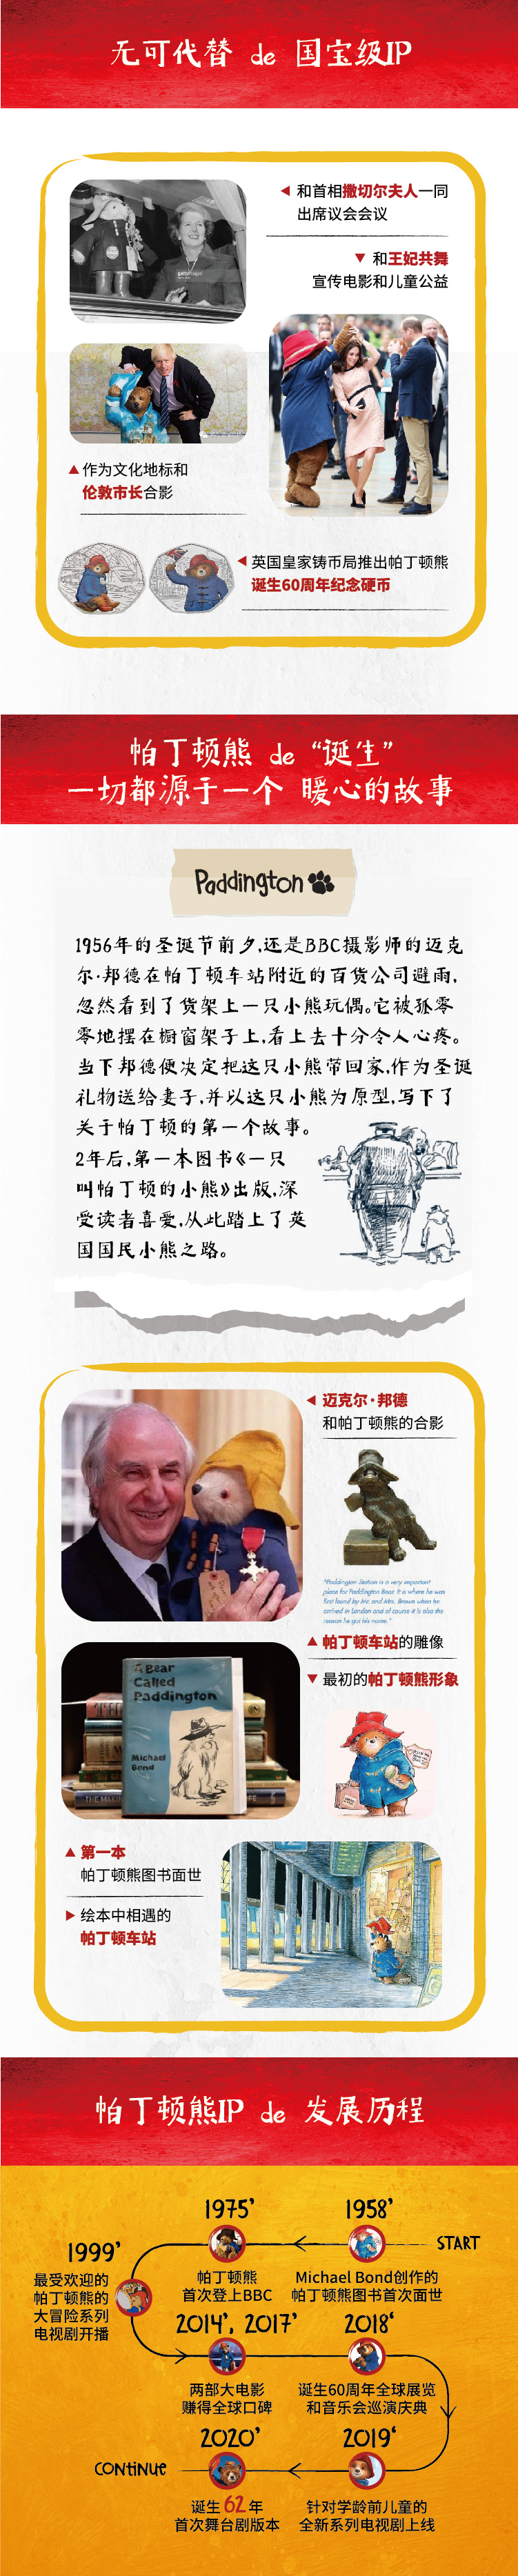 2021大船文化·外百老汇亲子剧《帕丁顿熊之小熊当家》中国制作版-天津站